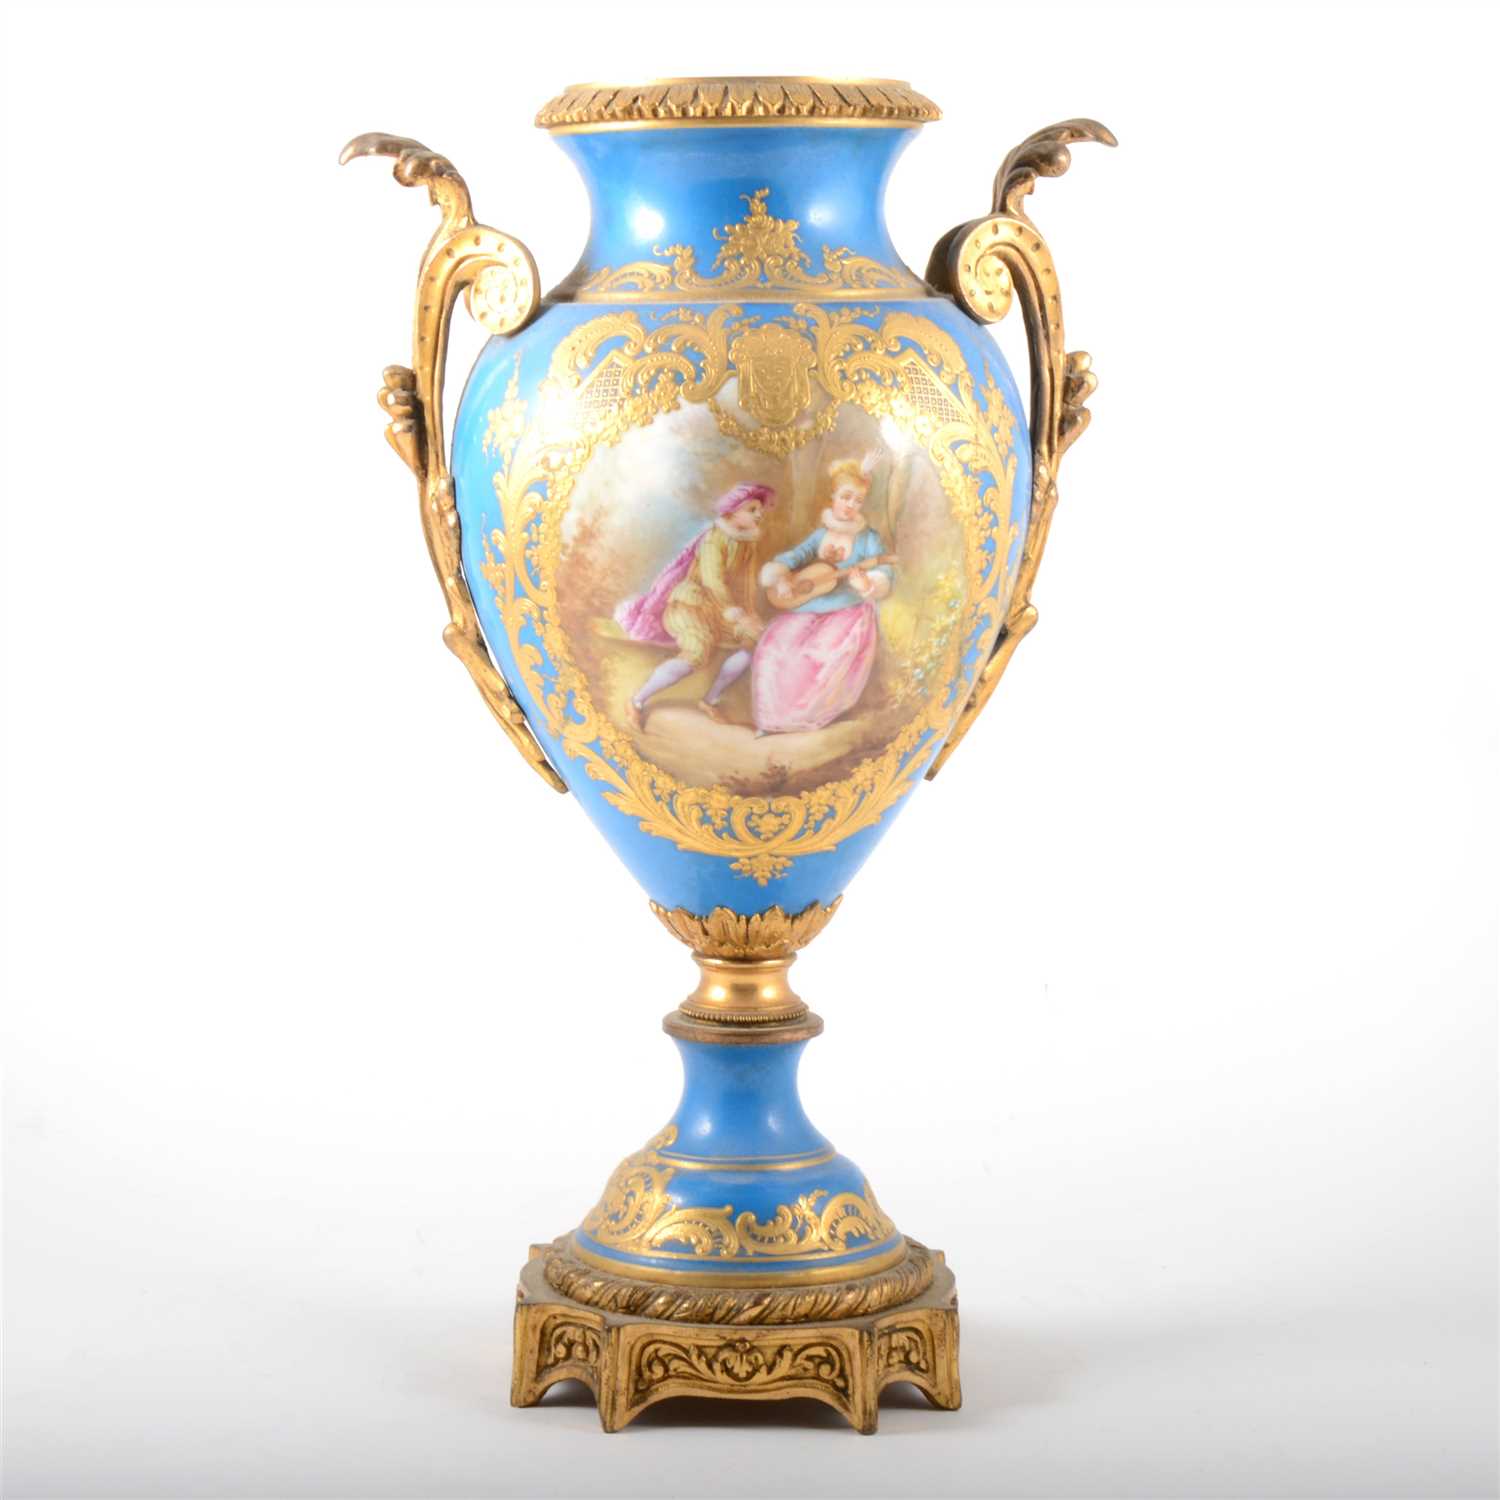 Lot 46 - A Sevres style blue celeste porcelain and gilt metal ornamental urn